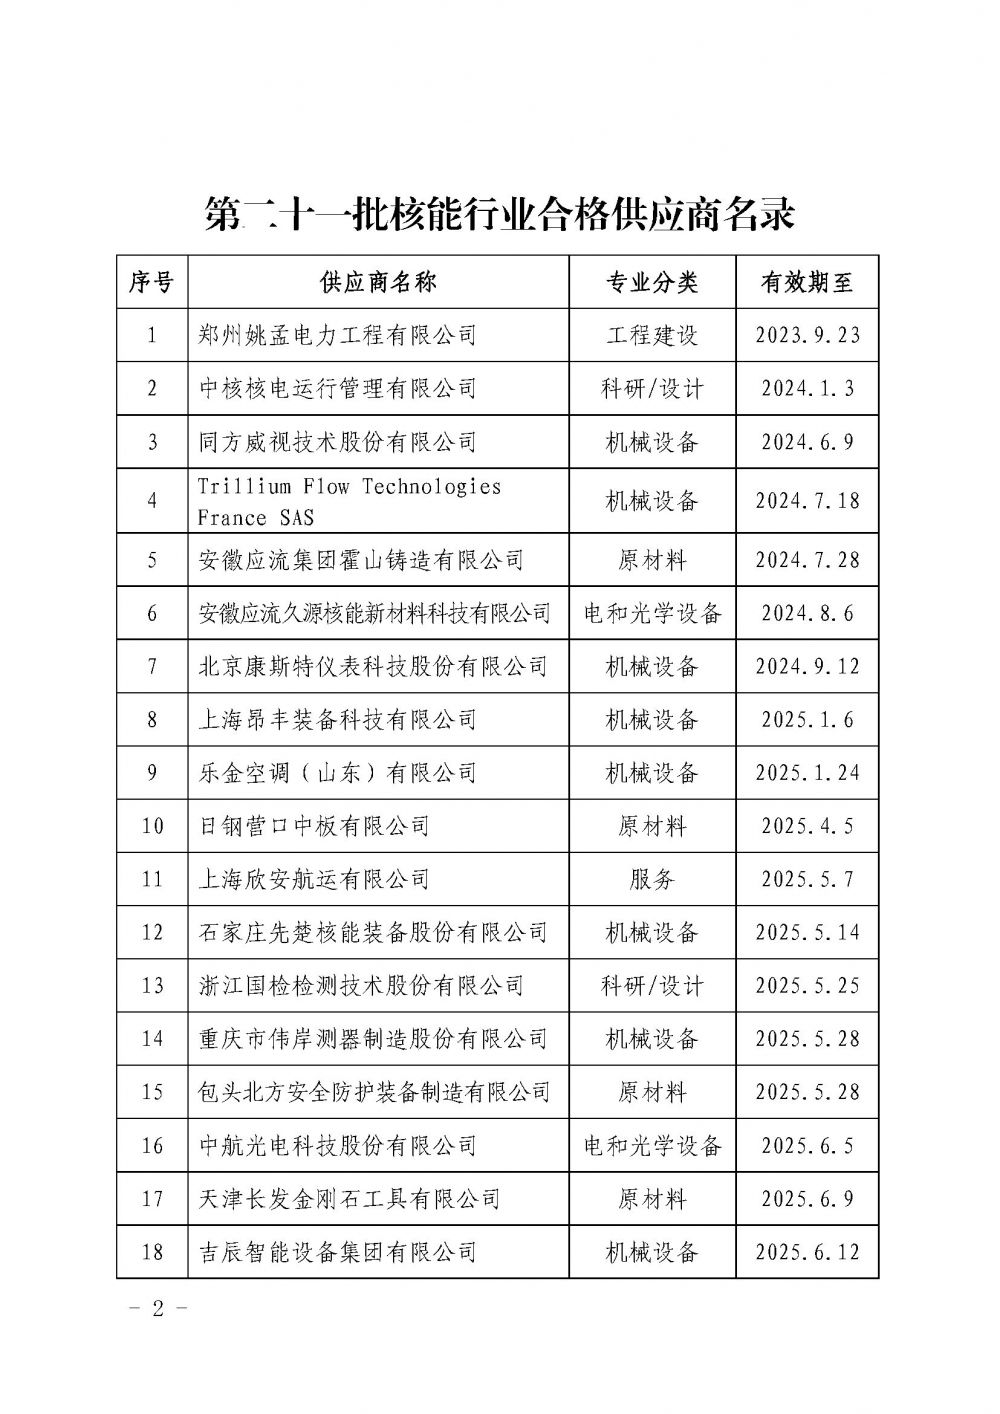 中国核能行业协会关于发布第二十一批核能行业合格供应商名录的公告_页面_2.jpg